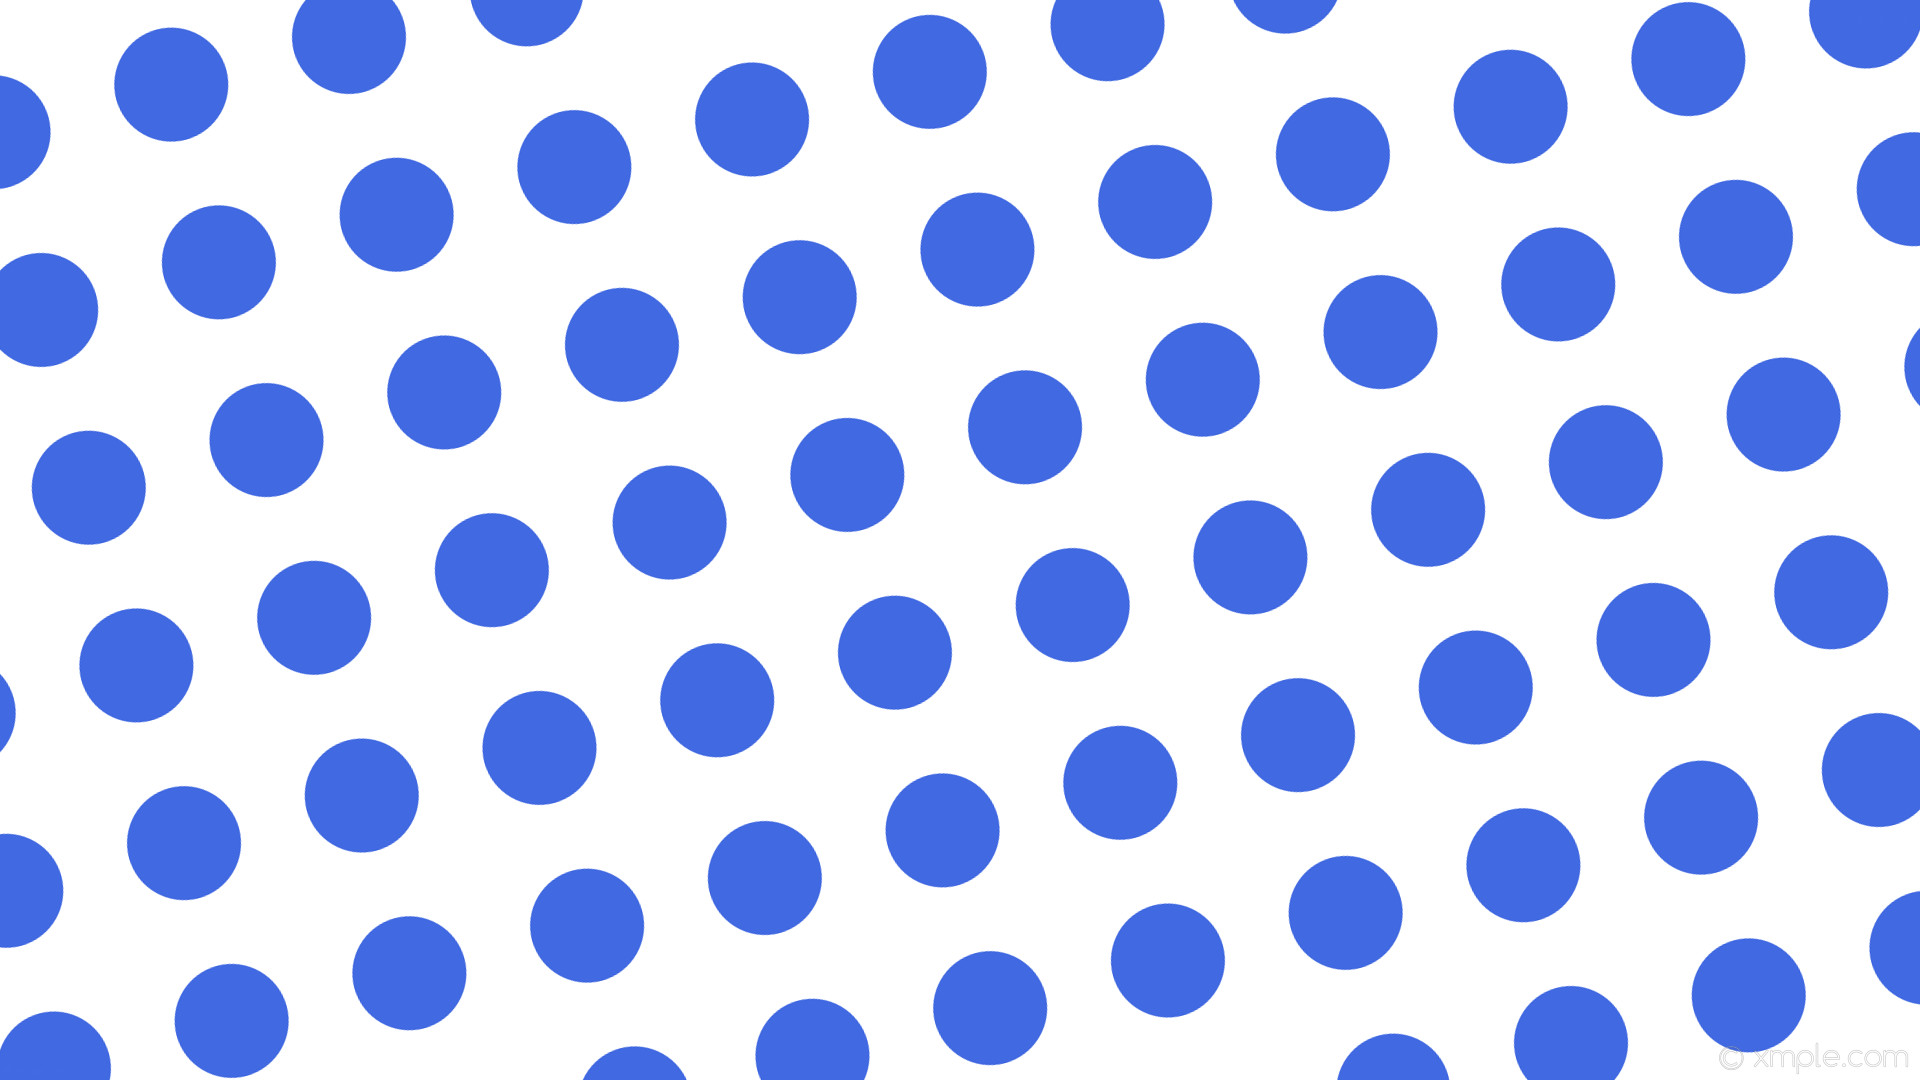 1920x1080 wallpaper white polka dots blue spots royal blue #ffffff #4169e1 285Â° 114px  184px